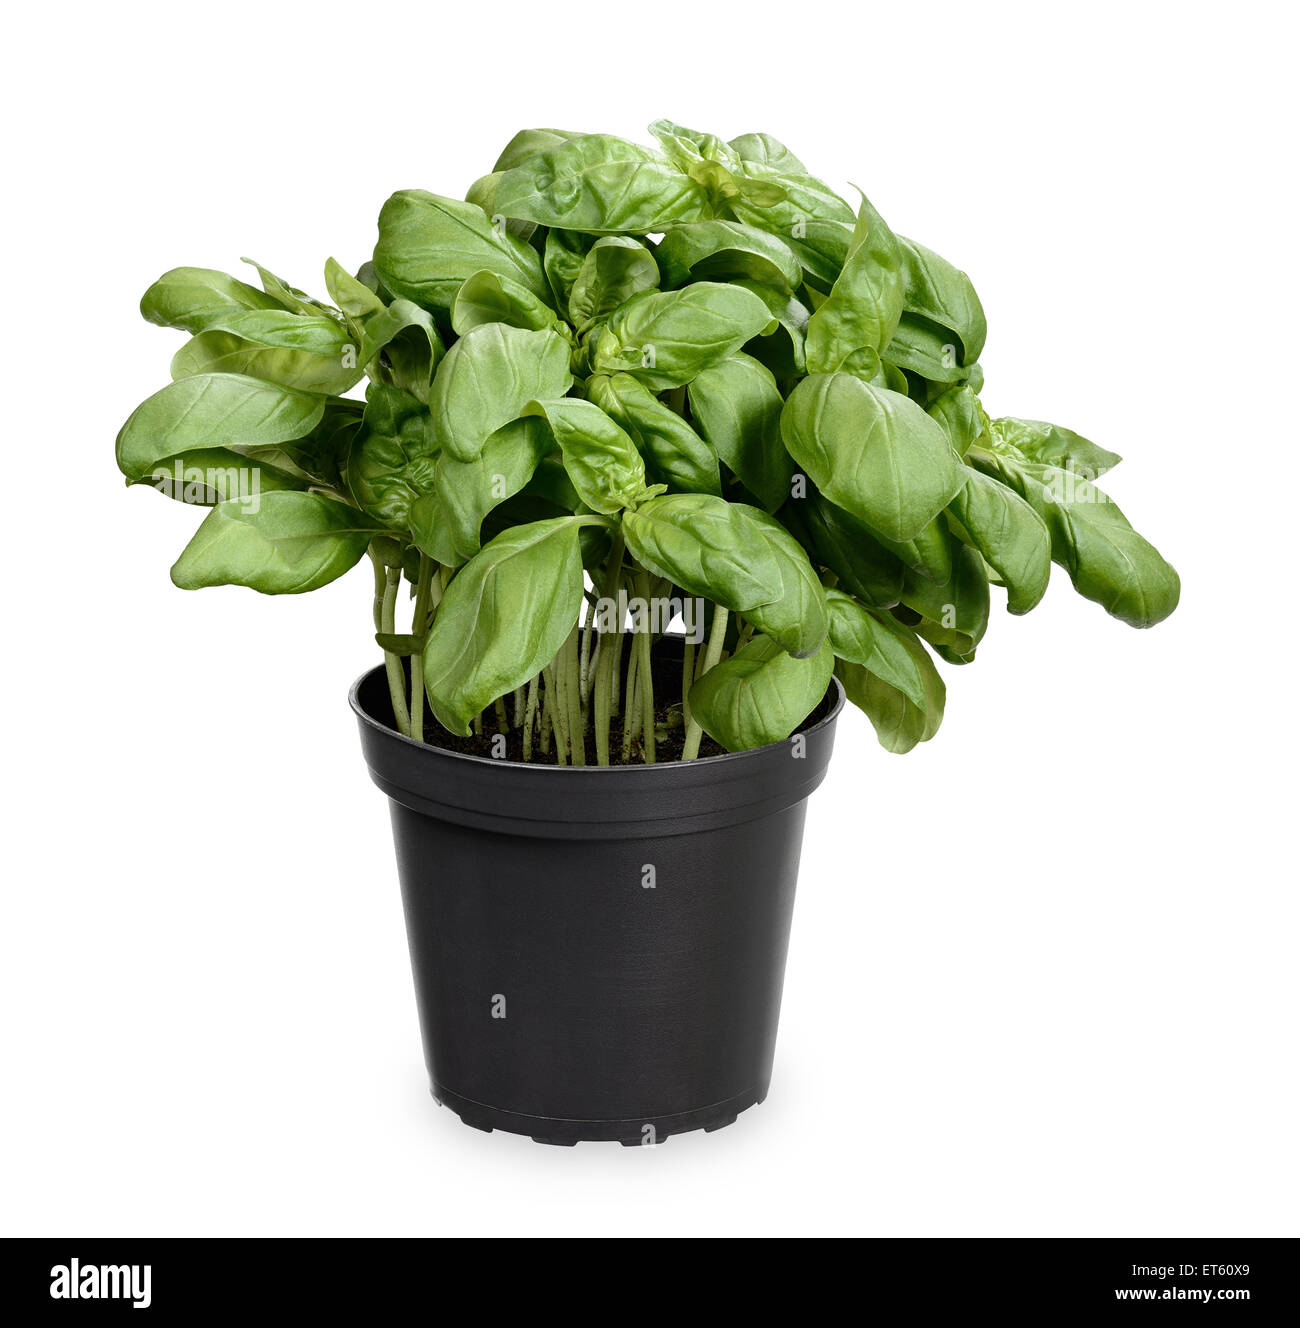 Basil plant in pot Stock Photo